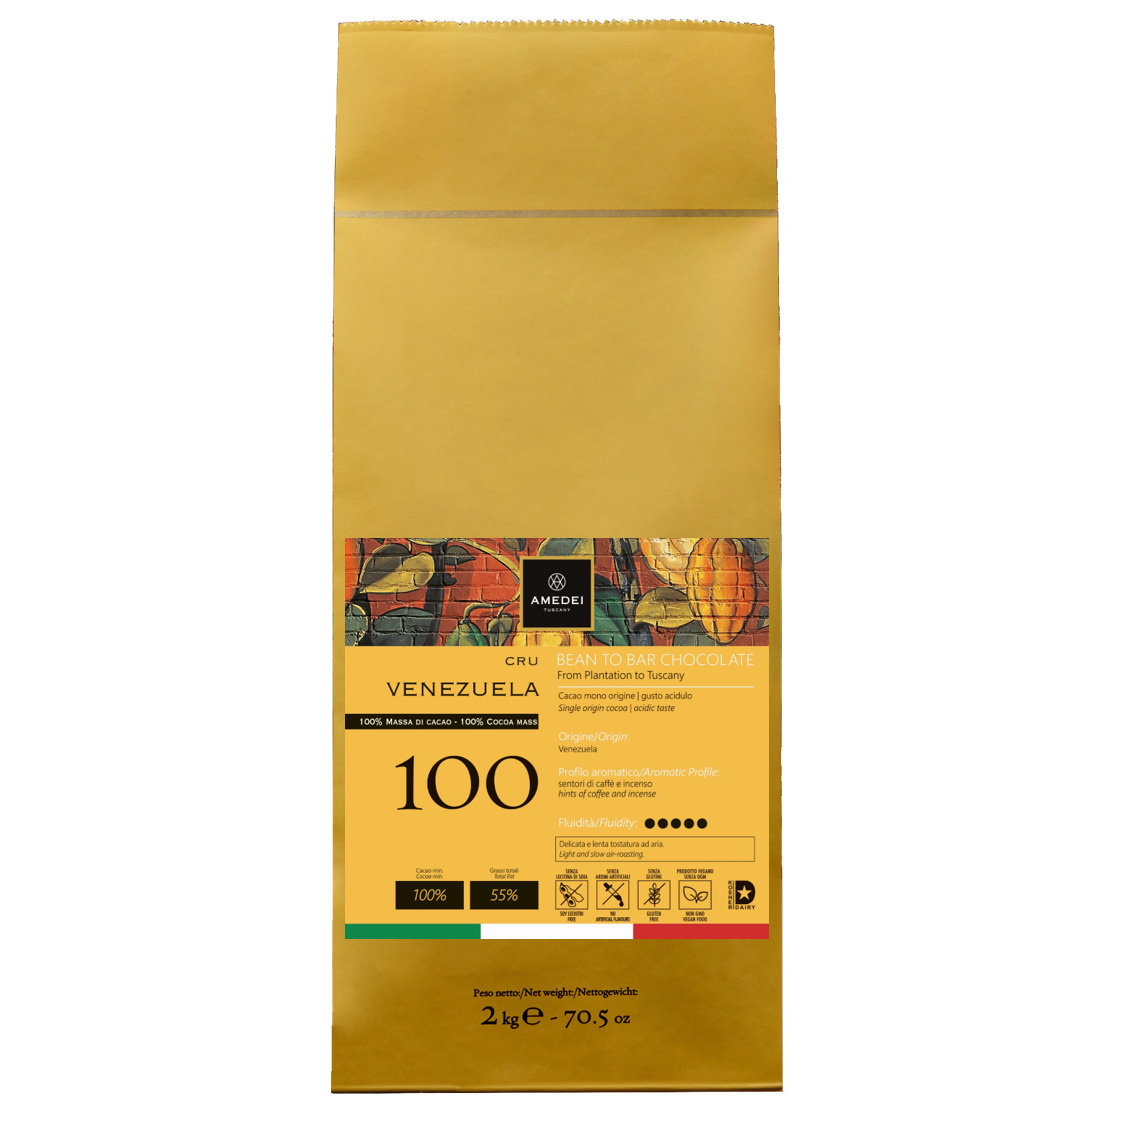 Amedei Venezuela 100% Cocoa Mass Drops